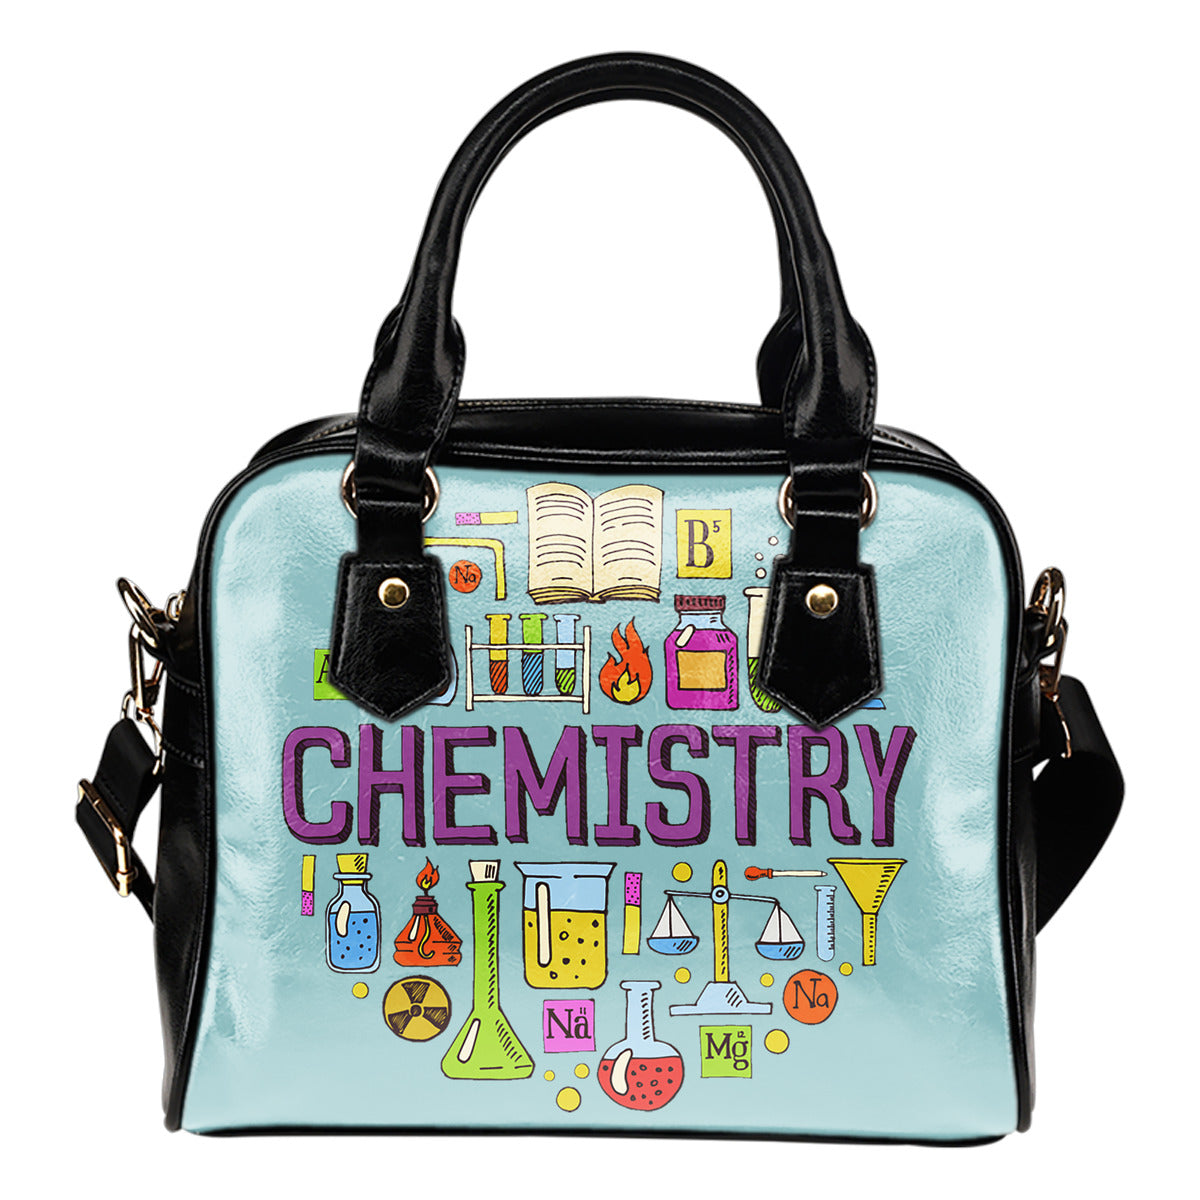 Chemistry Lovers Handbag